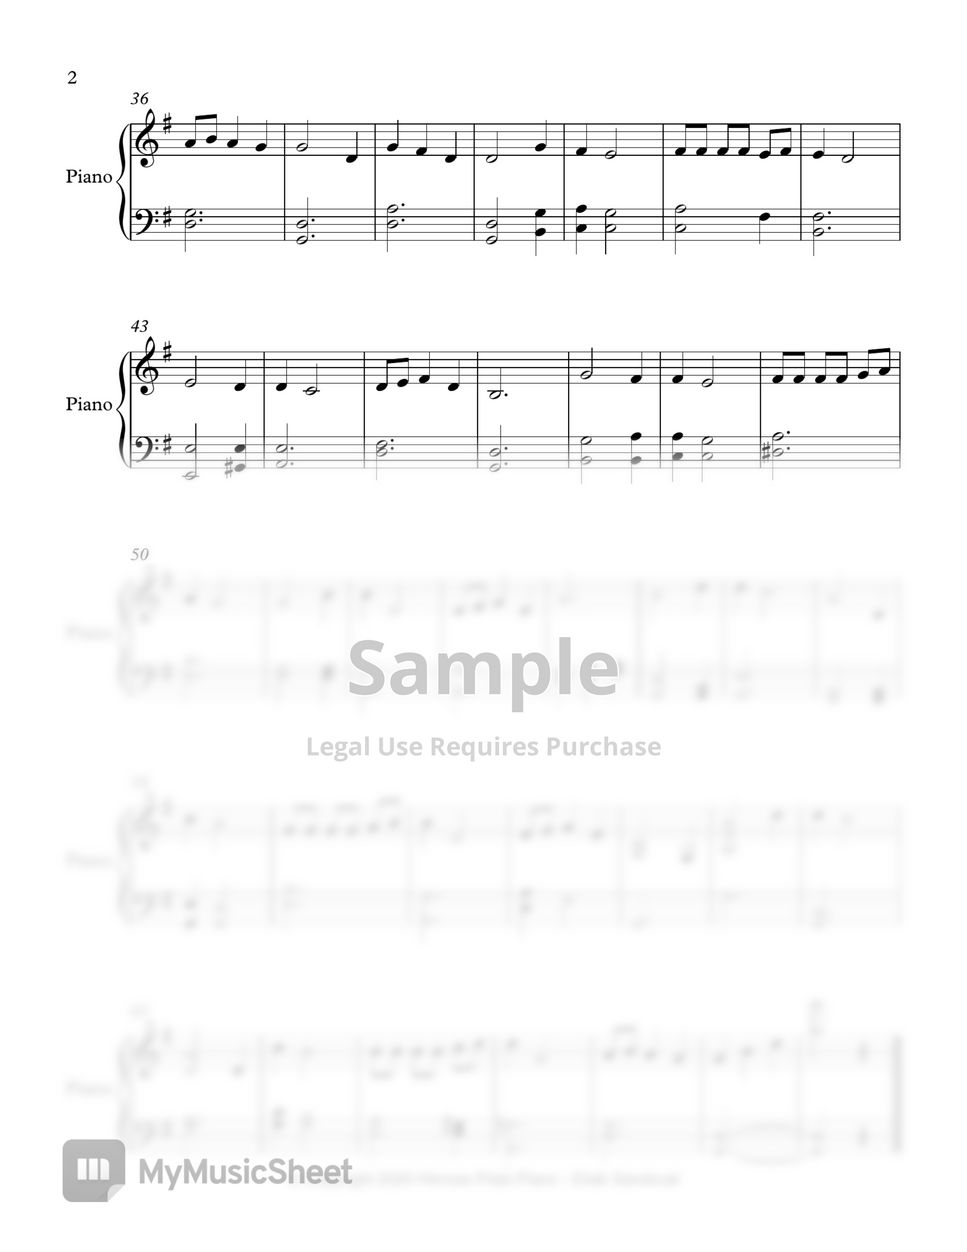 Himnario Adventista - Padre amado - Fácil (Himno 368) Sheets by Himnos  Pista Piano